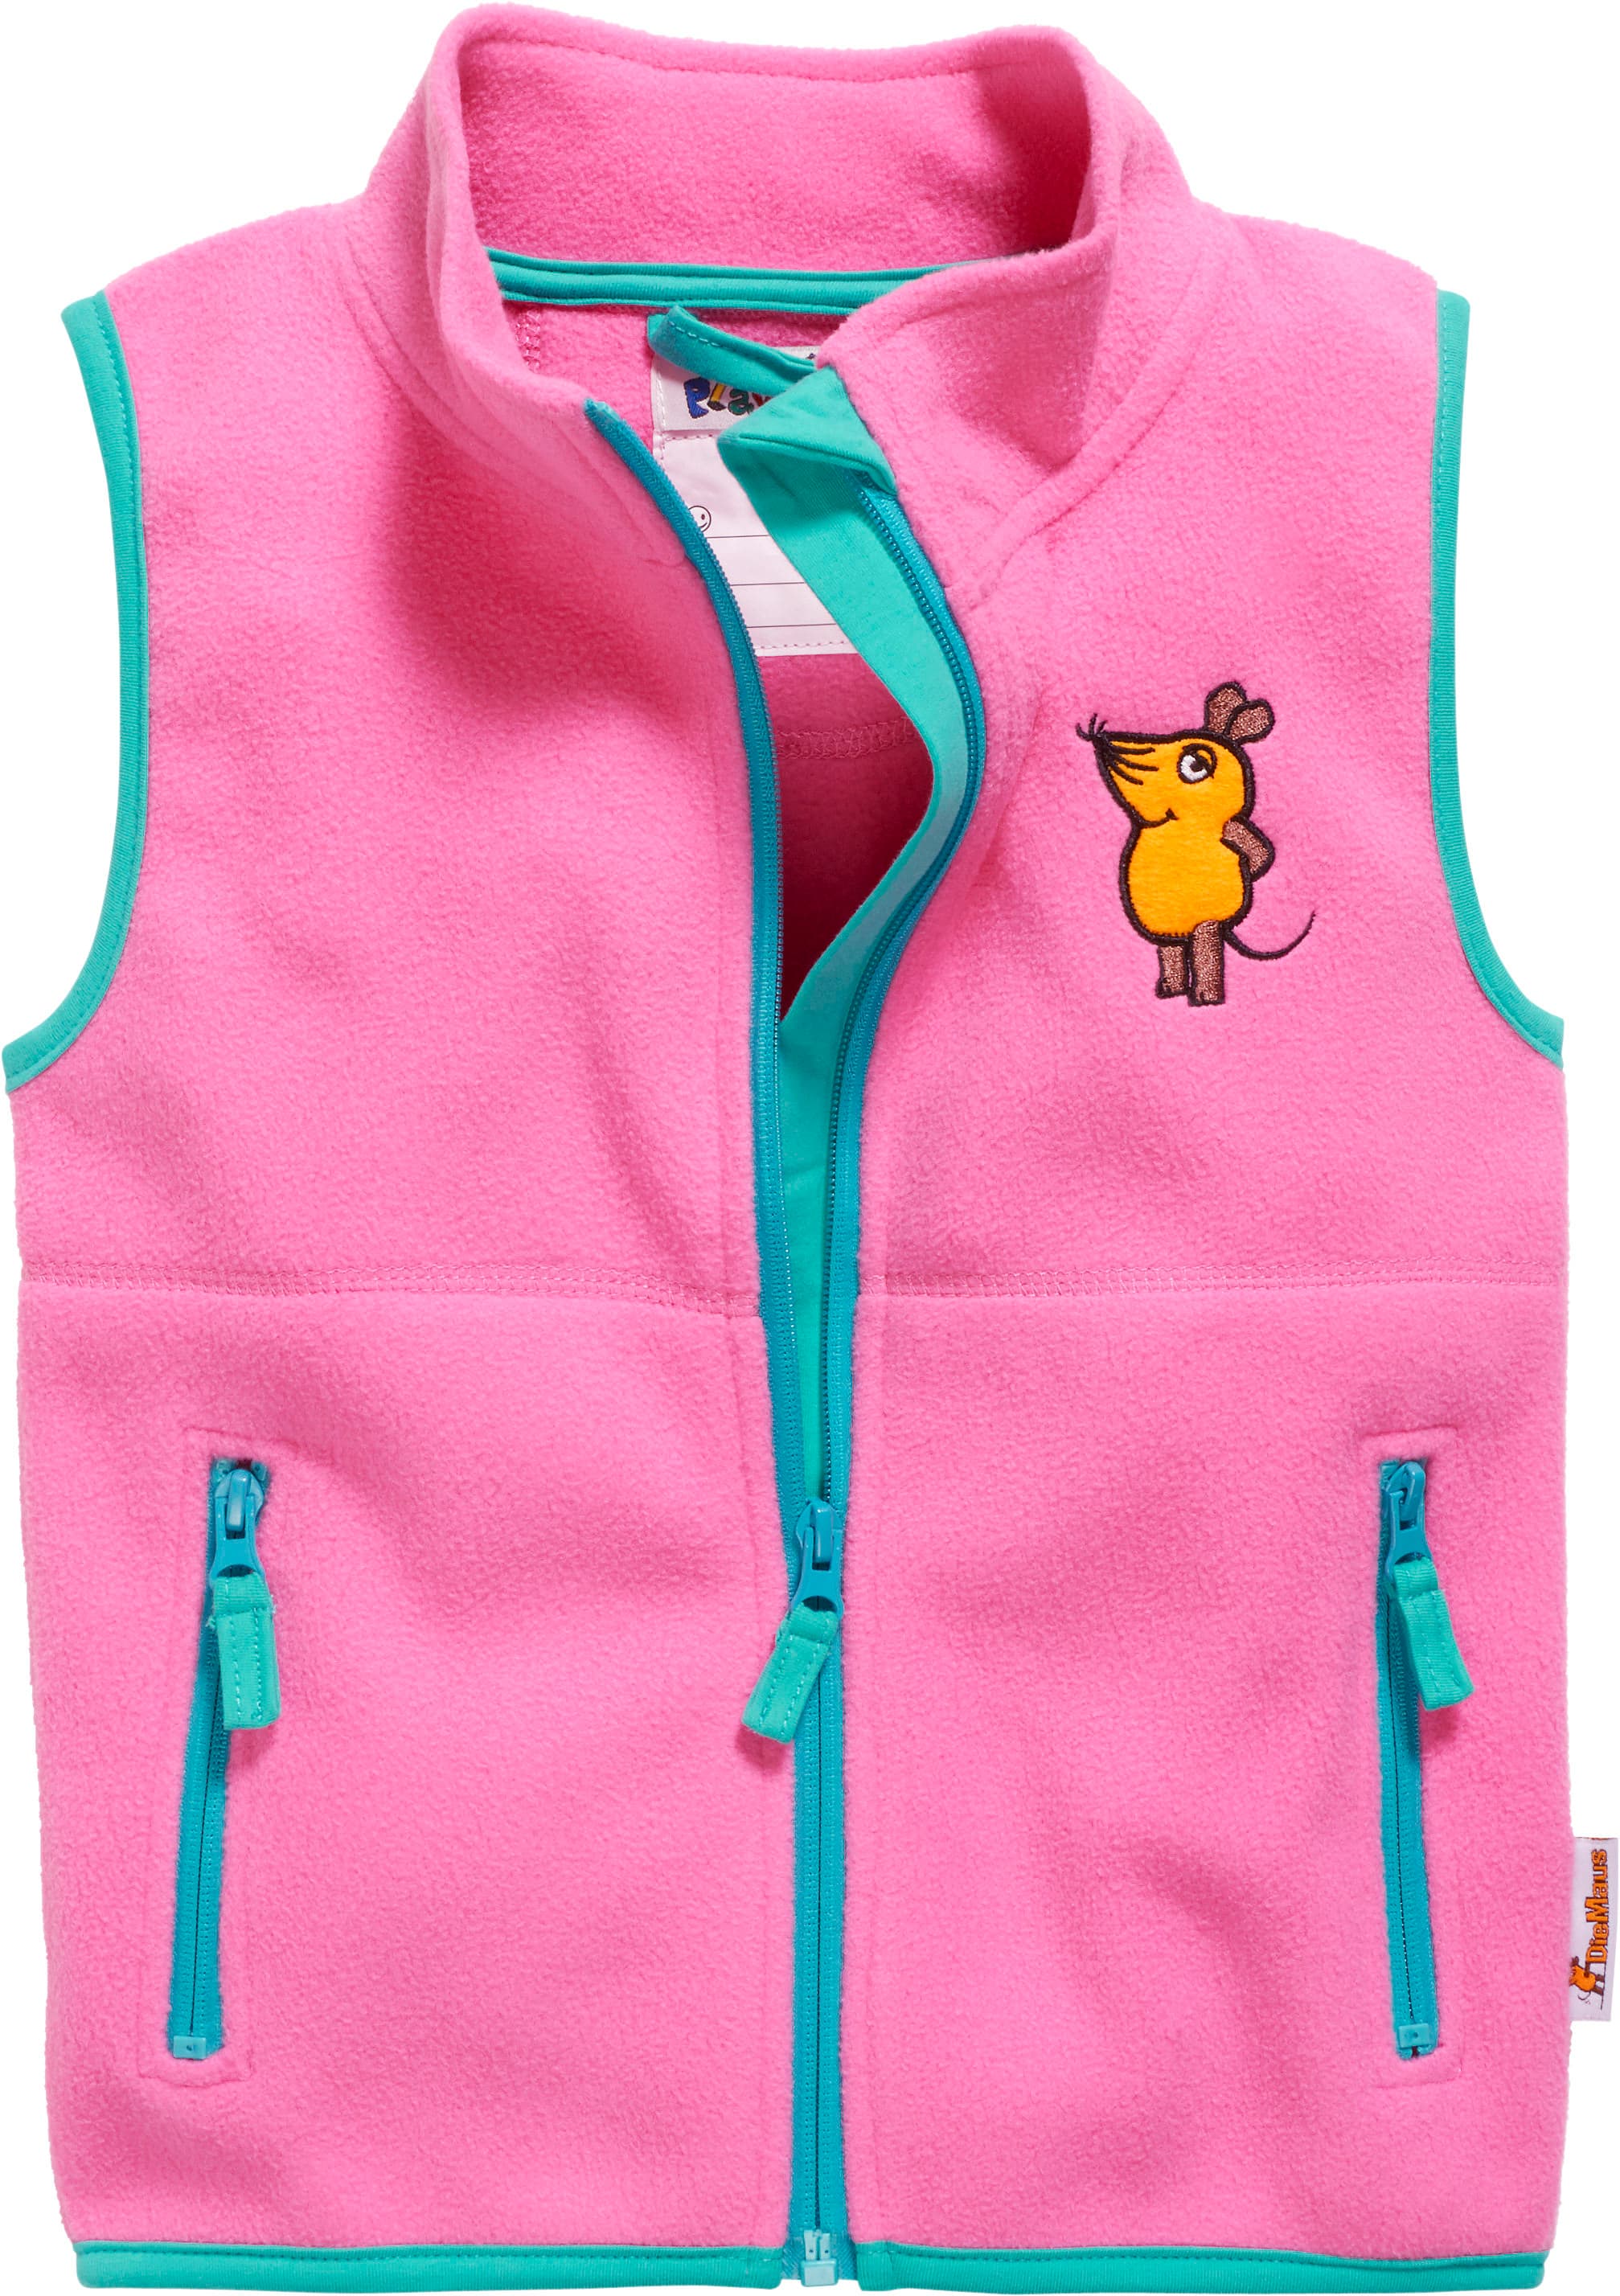 Dětská fleecová vesta Playshoes s myškou Pink Velikost: 116